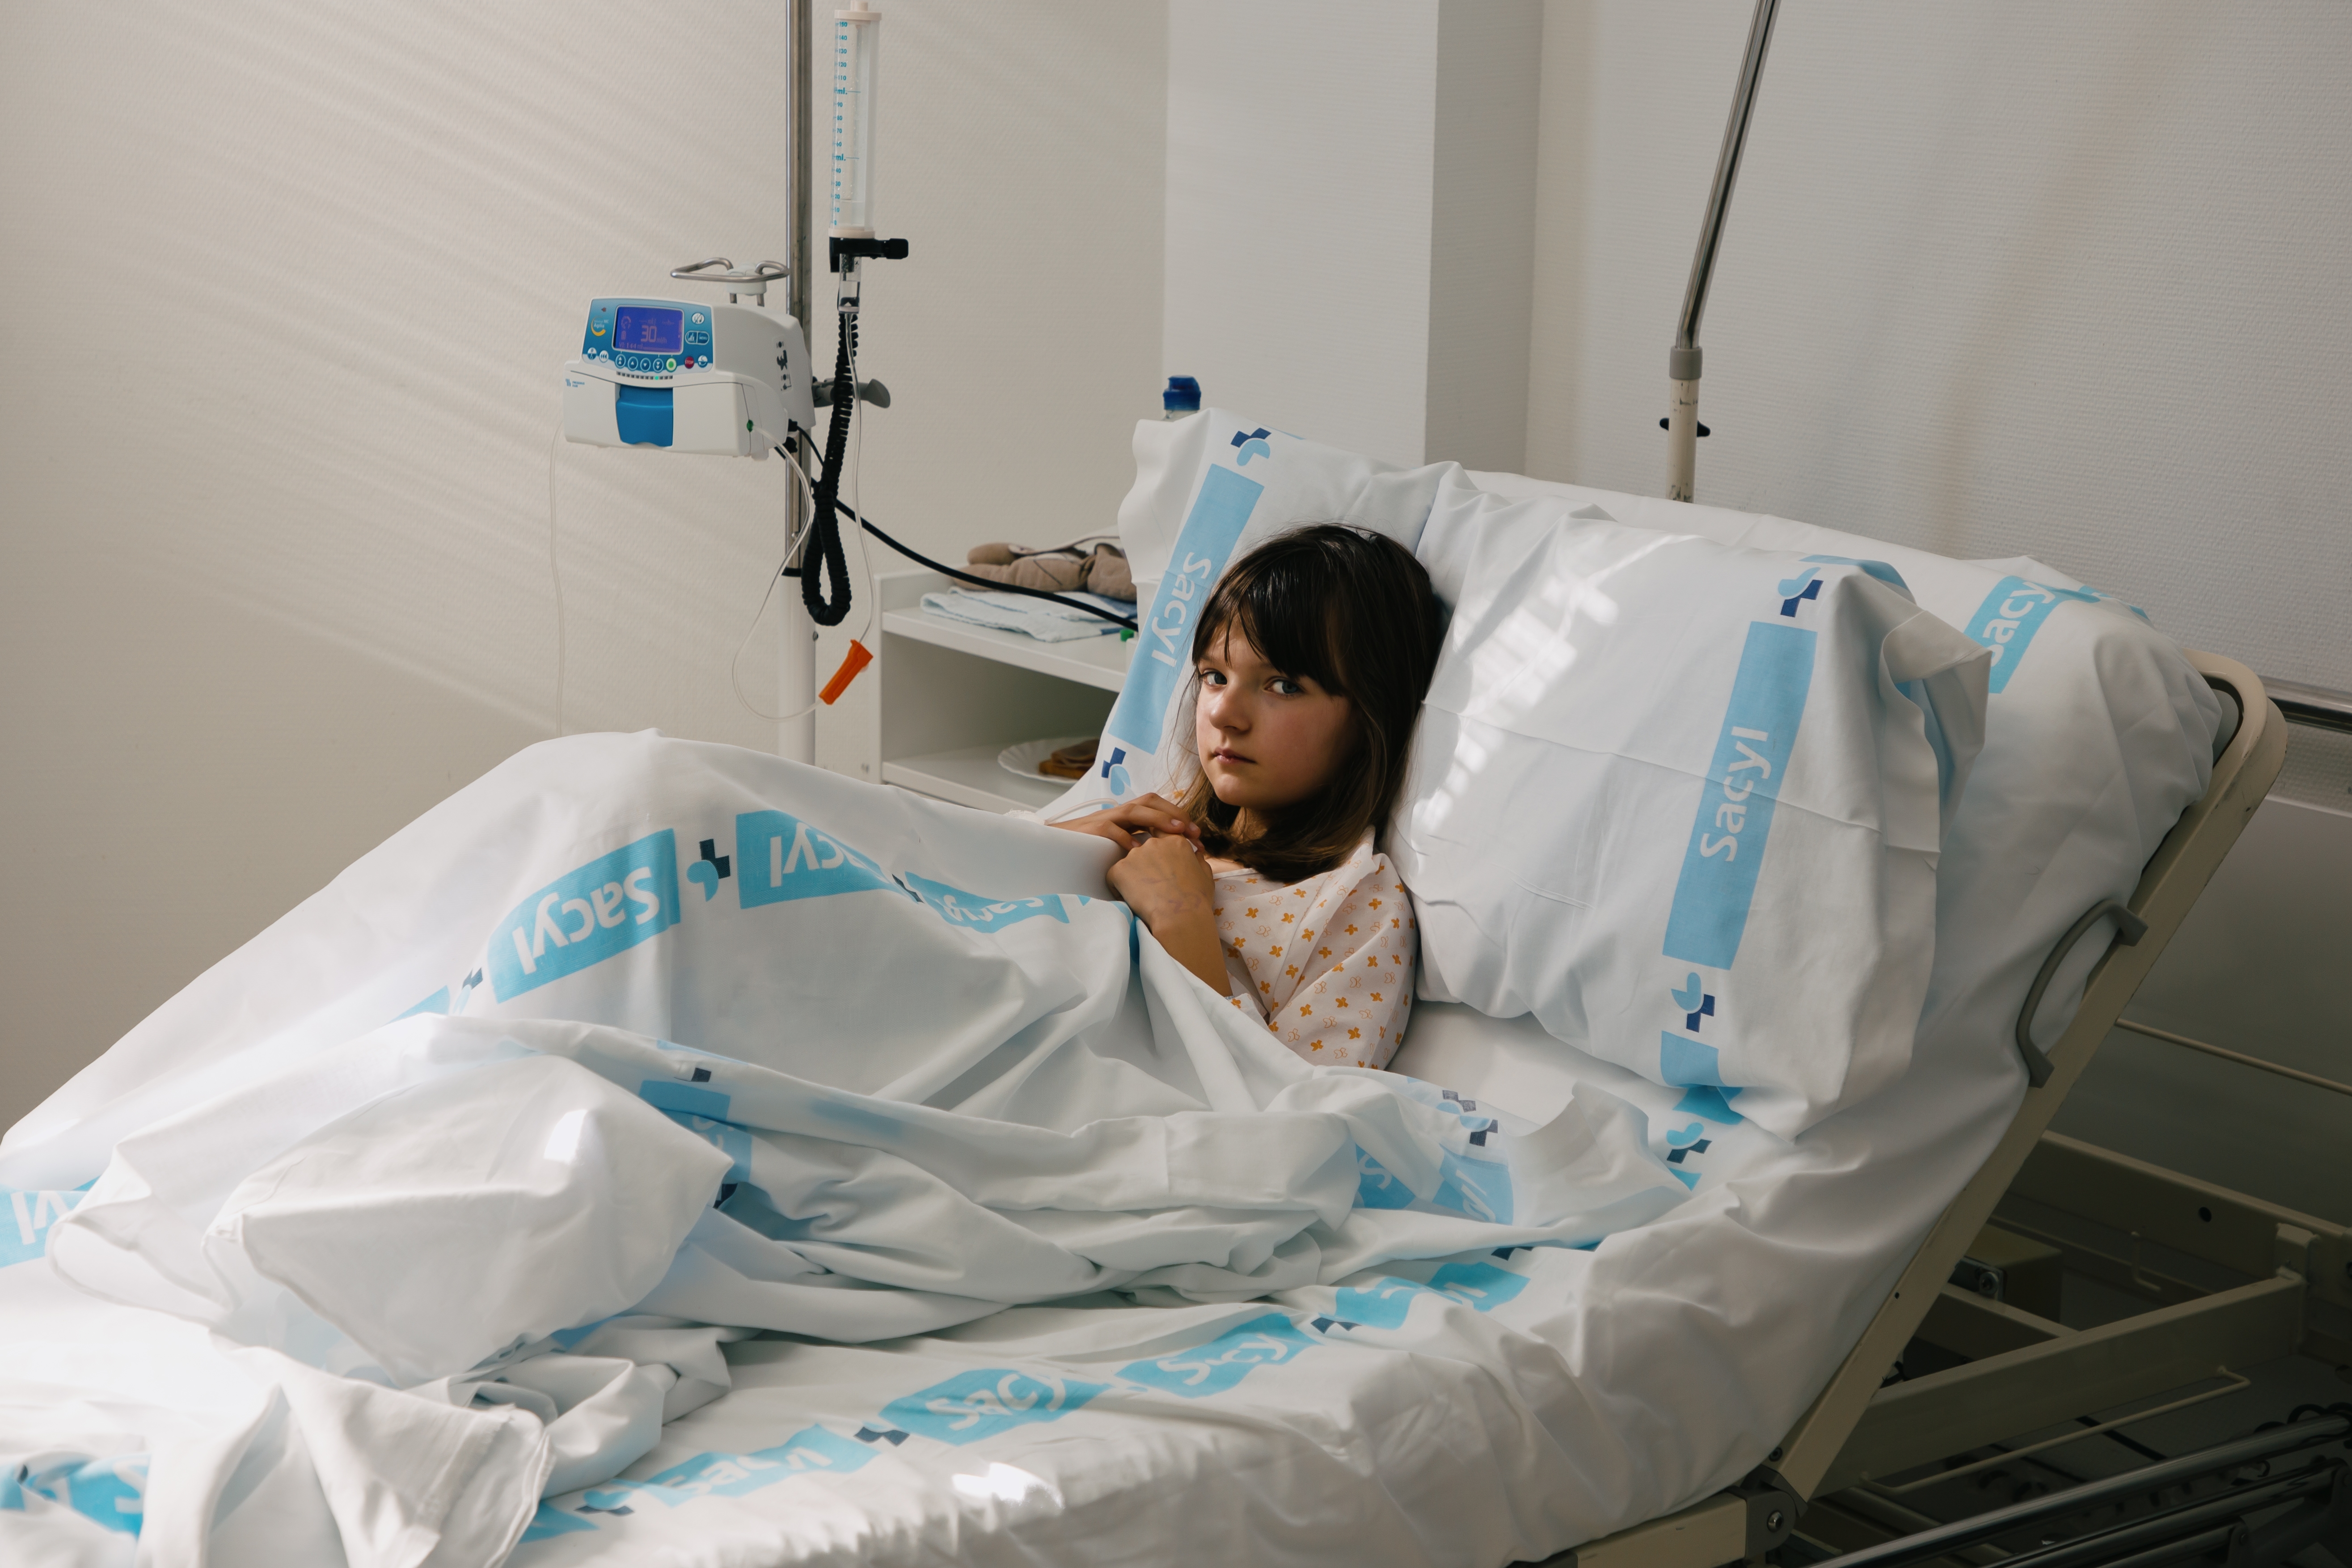 La niña yace en una cama de hospital | Fuente: Shutterstock.com